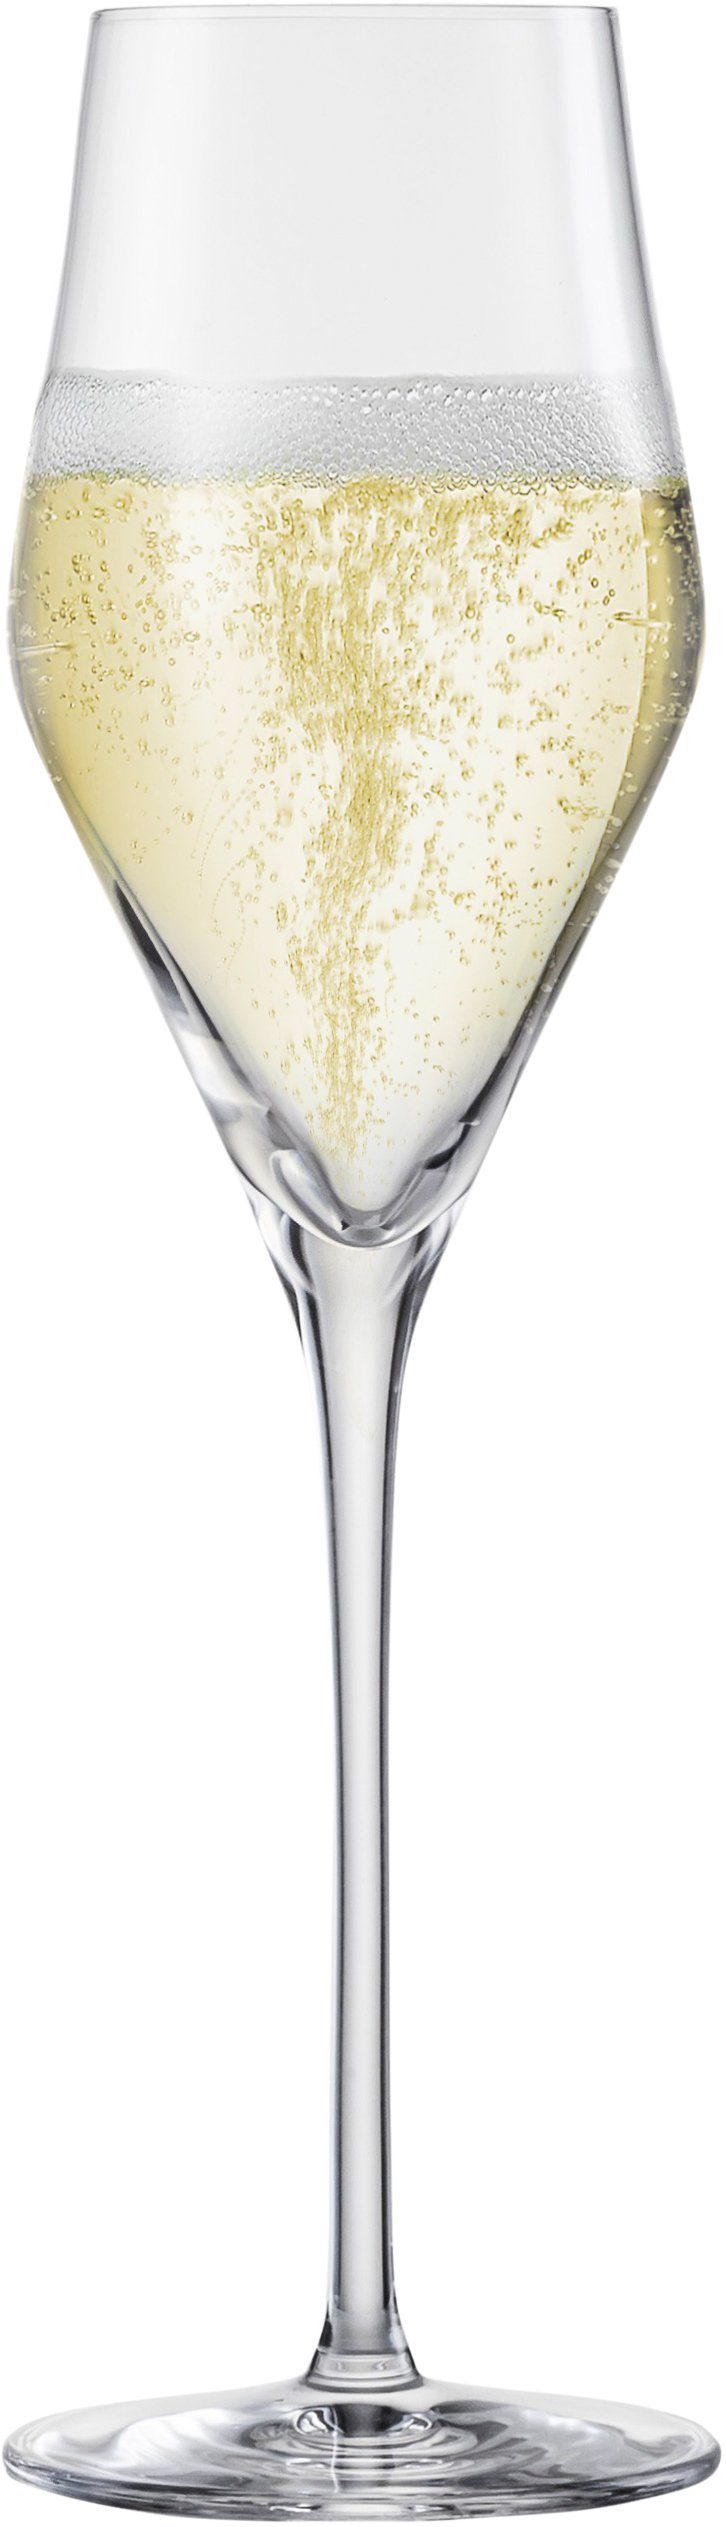 Eisch Champagnerglas Sky SensisPlus, Kristallglas, bleifrei, 260 ml, 4- teilig | Gläser